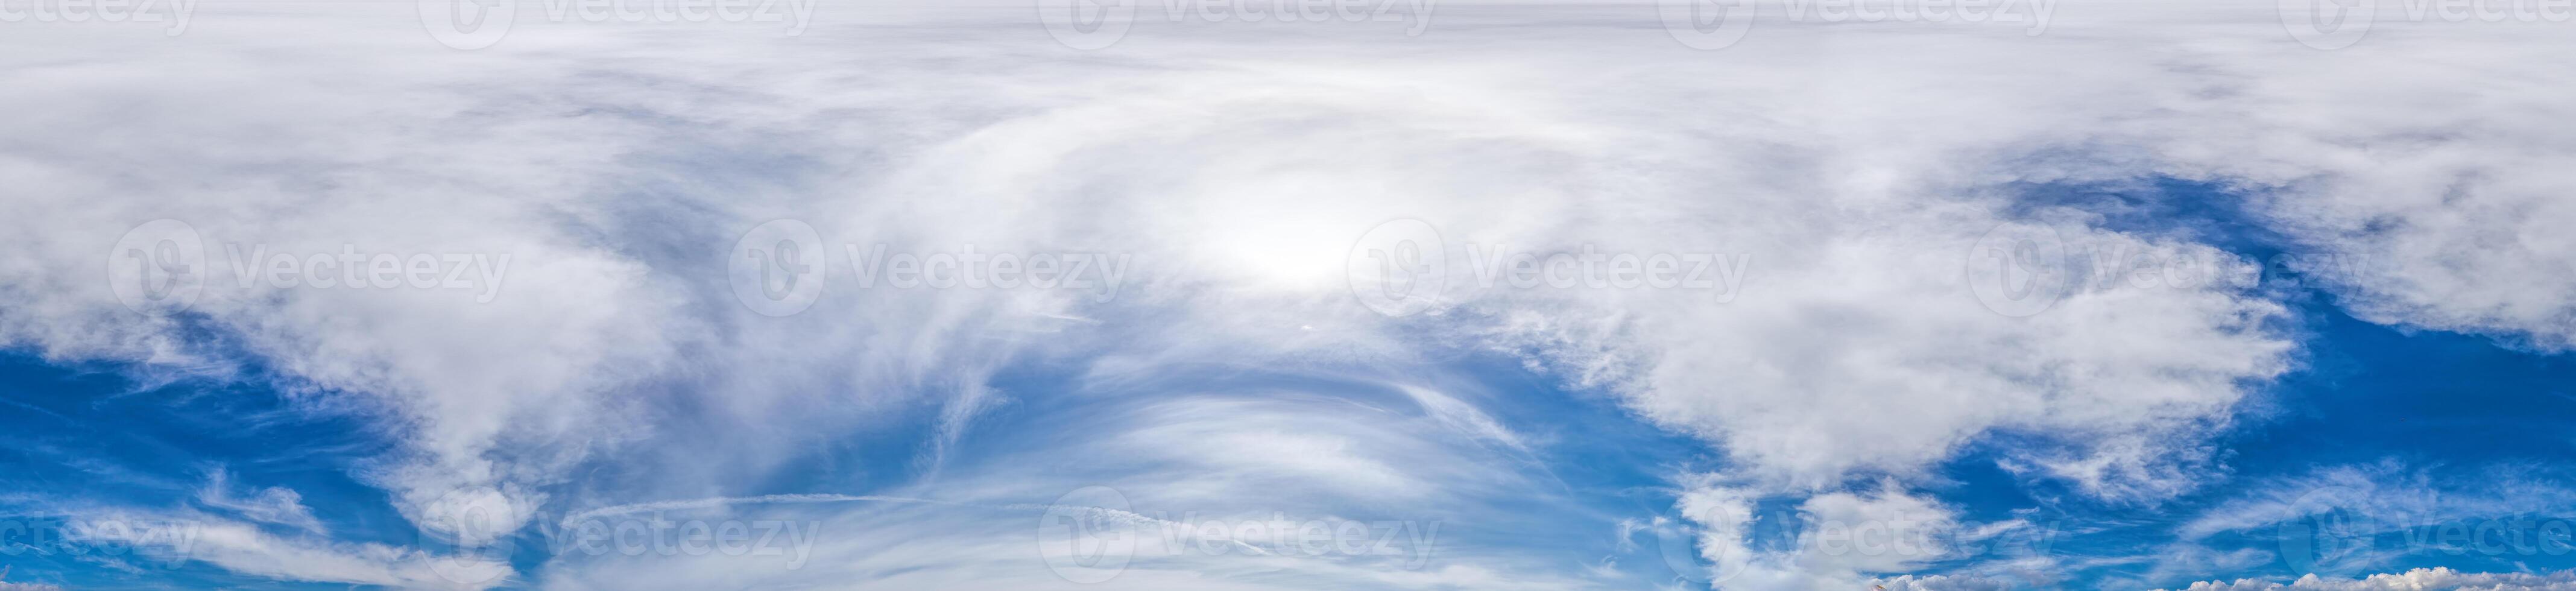 naadloos panorama van lucht met licht wolken in bolvormig equirectangular formaat met compleet zenit voor gebruik in 3d grafiek, spel en voor composieten in antenne dar 360 mate panorama's net zo een lucht koepel. foto